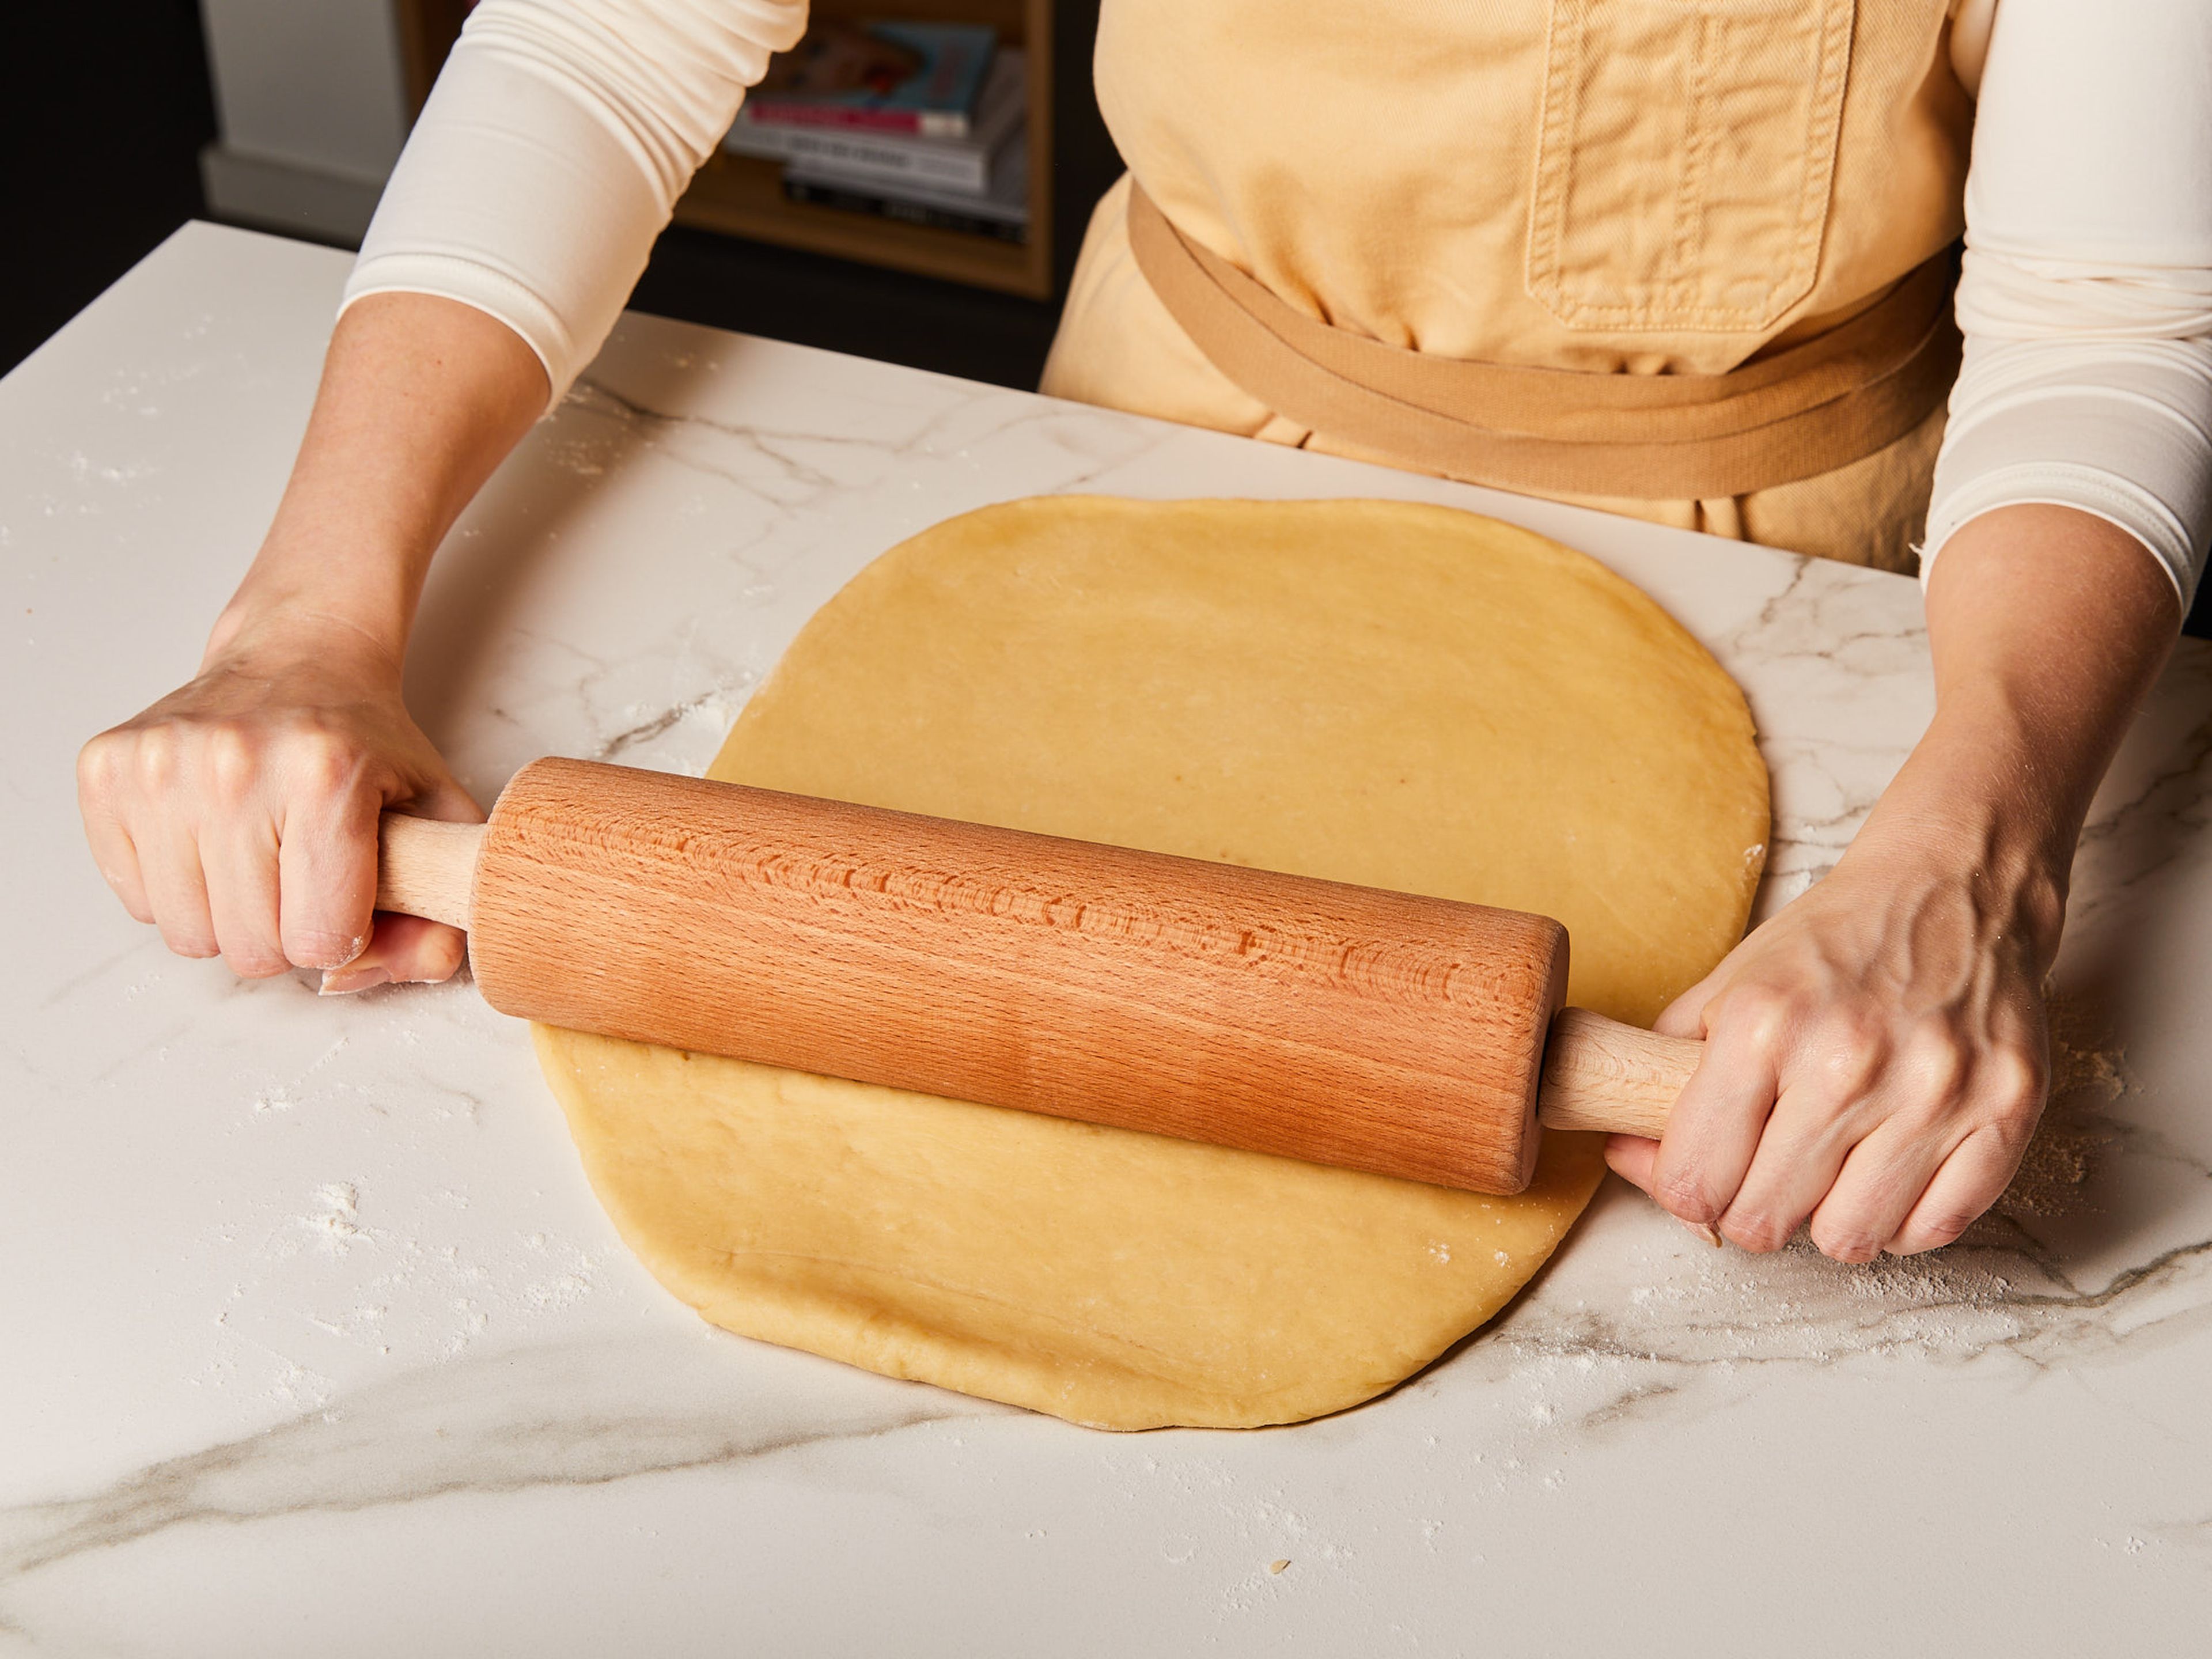 Den Ofen auf 180°C vorheizen. In einer Schüssel gemahlenen Zimt, Muskatnuss und einen Teil des Zuckers mischen. Ein Backblech oder eine Backform mit Butter einfetten. Den Teig auf einer leicht bemehlten Fläche kurz durchkneten, bis er glatt ist, und dann so ausrollen, dass er auf das Backblech passt.